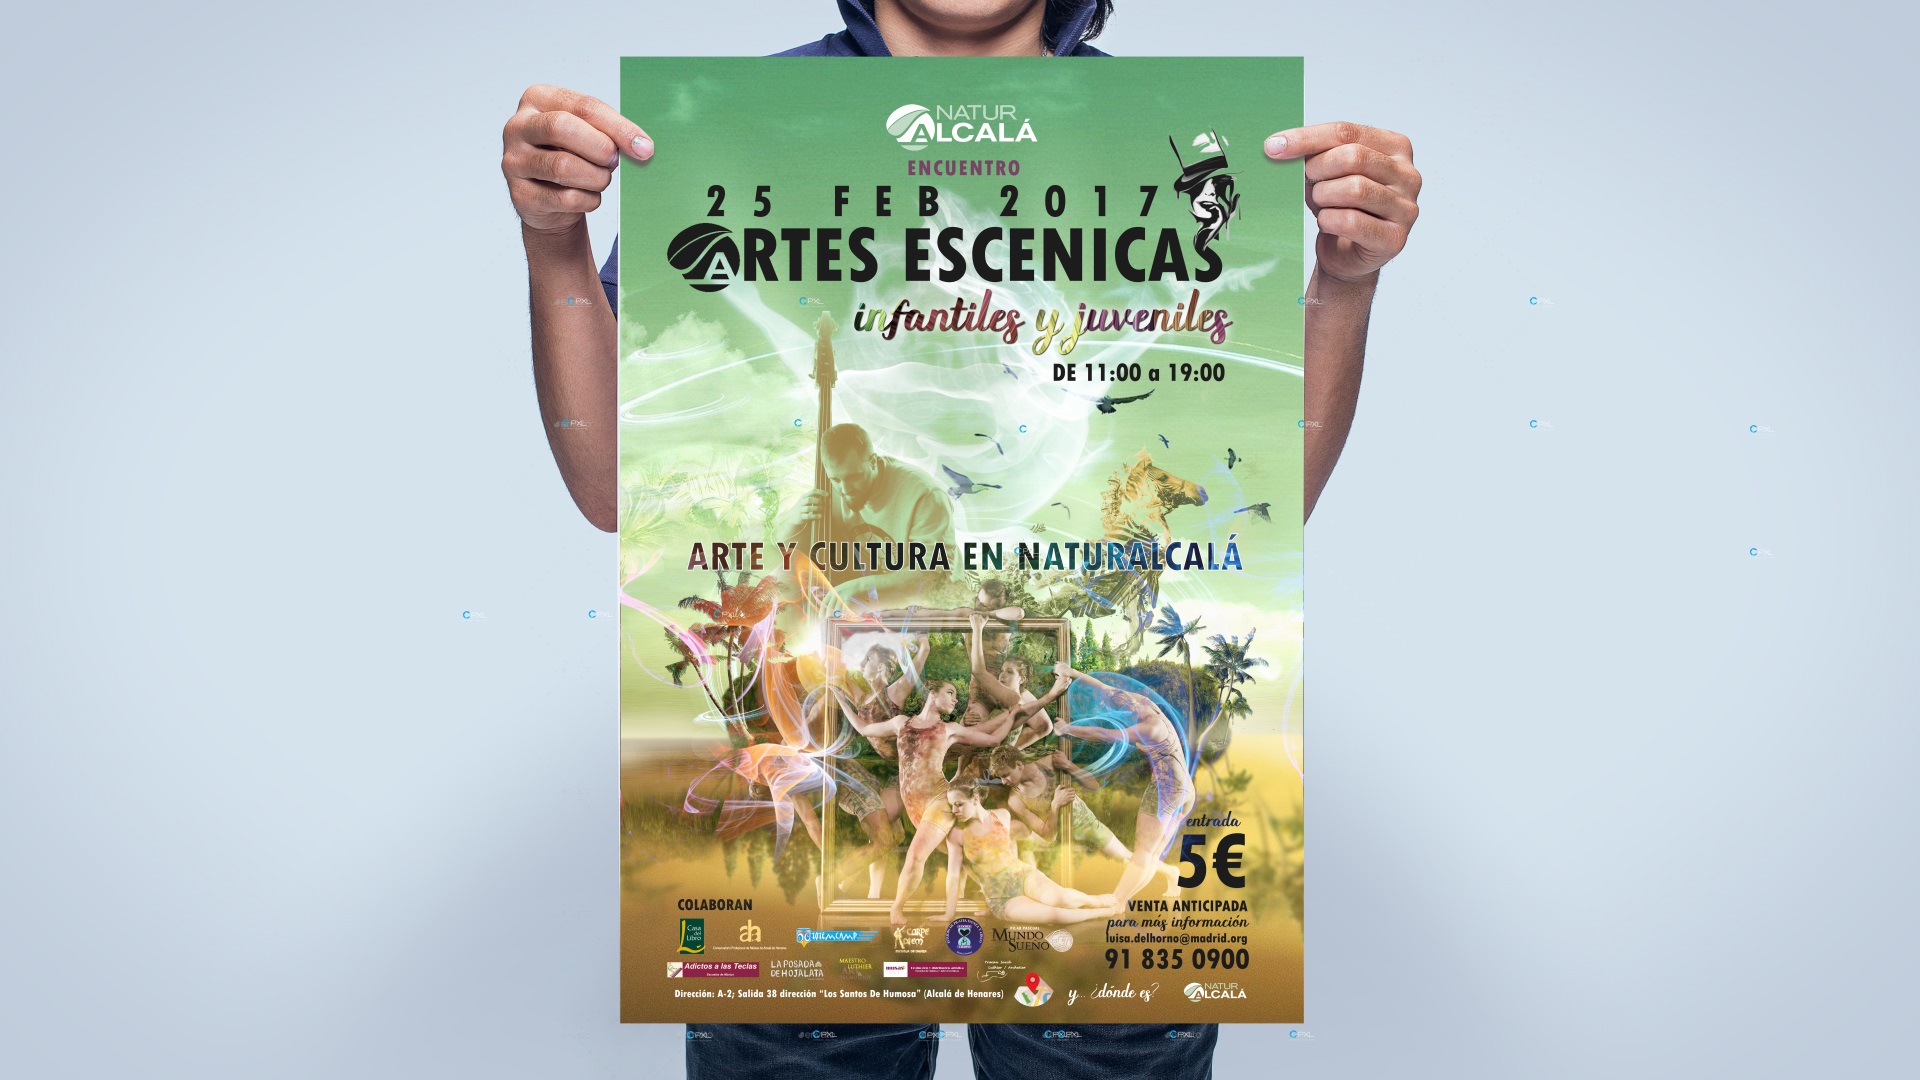 Cartel publicitario para encuentro de artes escénicas en Madrid - Naturalcalá